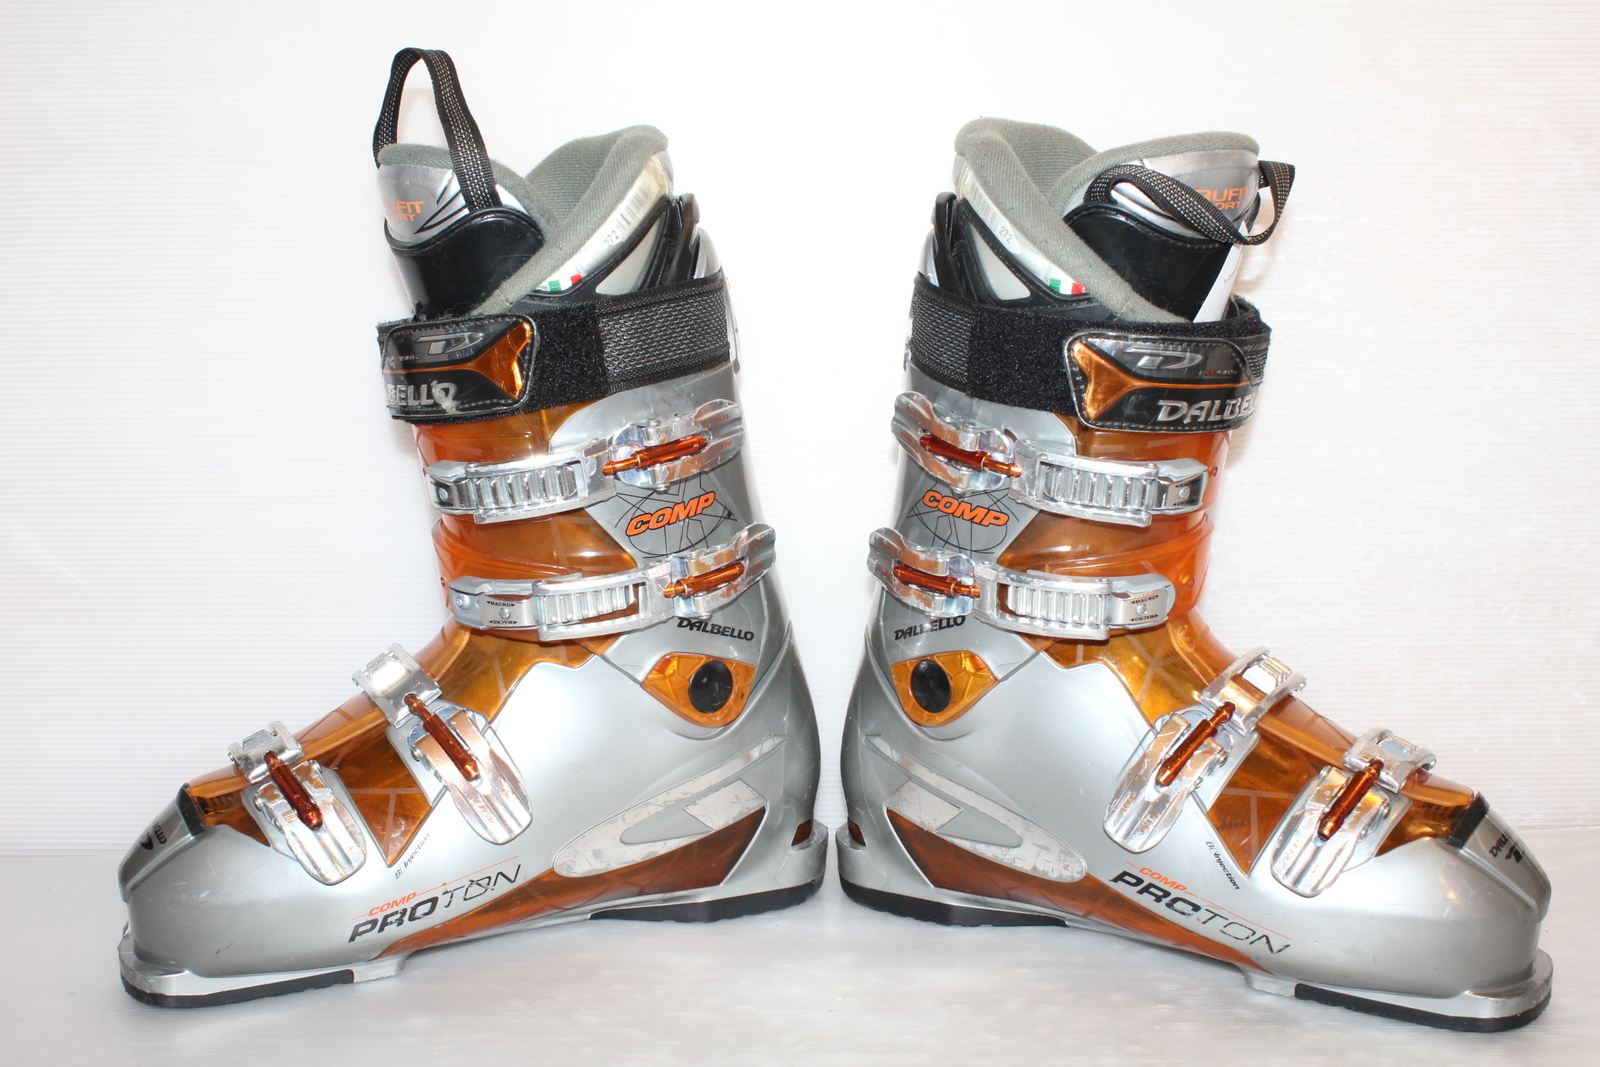 Lyžařské boty Dalbello Comp Proton vel. EU45 flexe 80